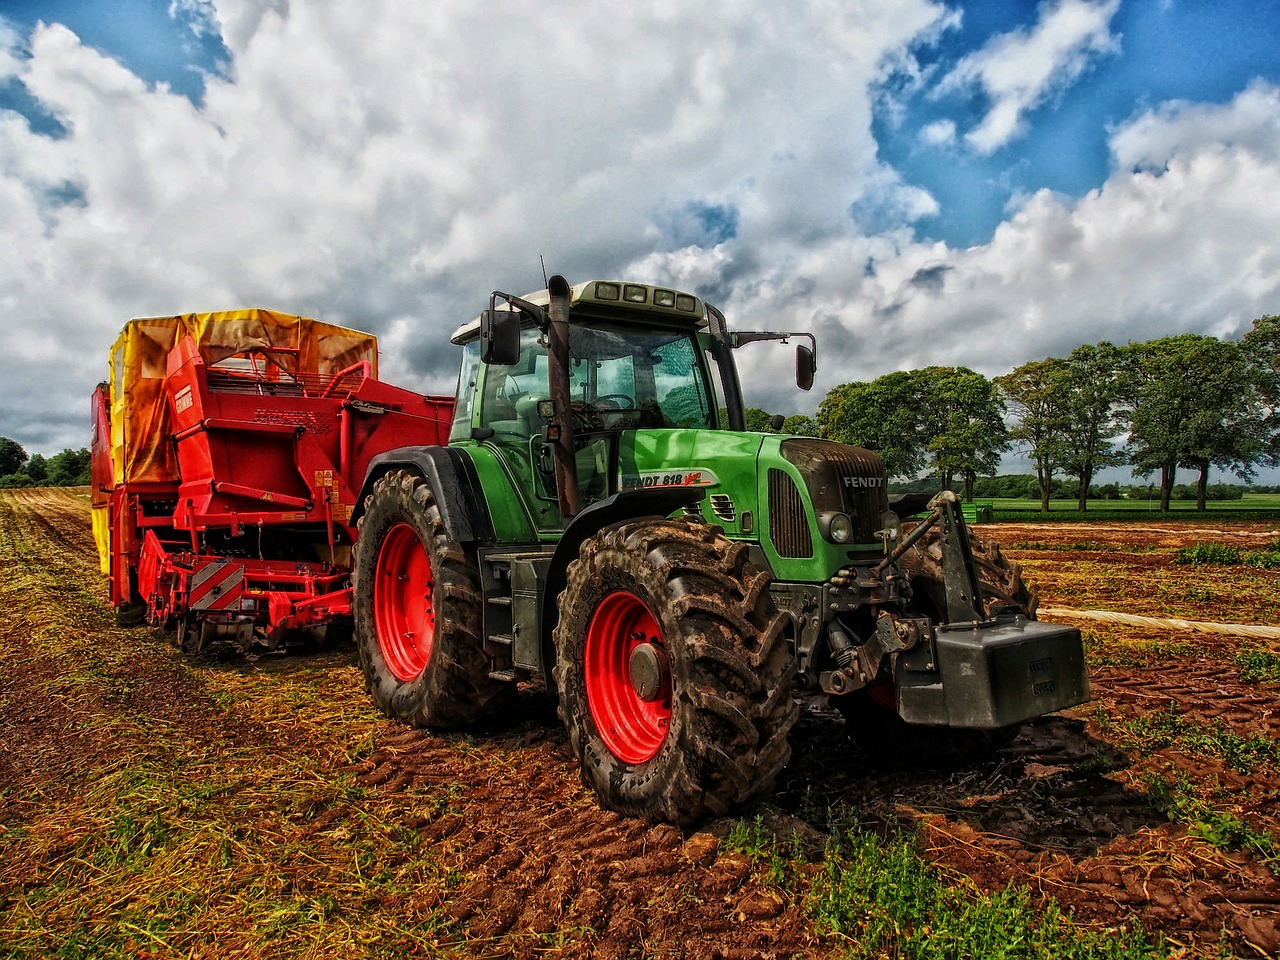 Tractor plan renove maquinaria agrícola ministerio de agricultura